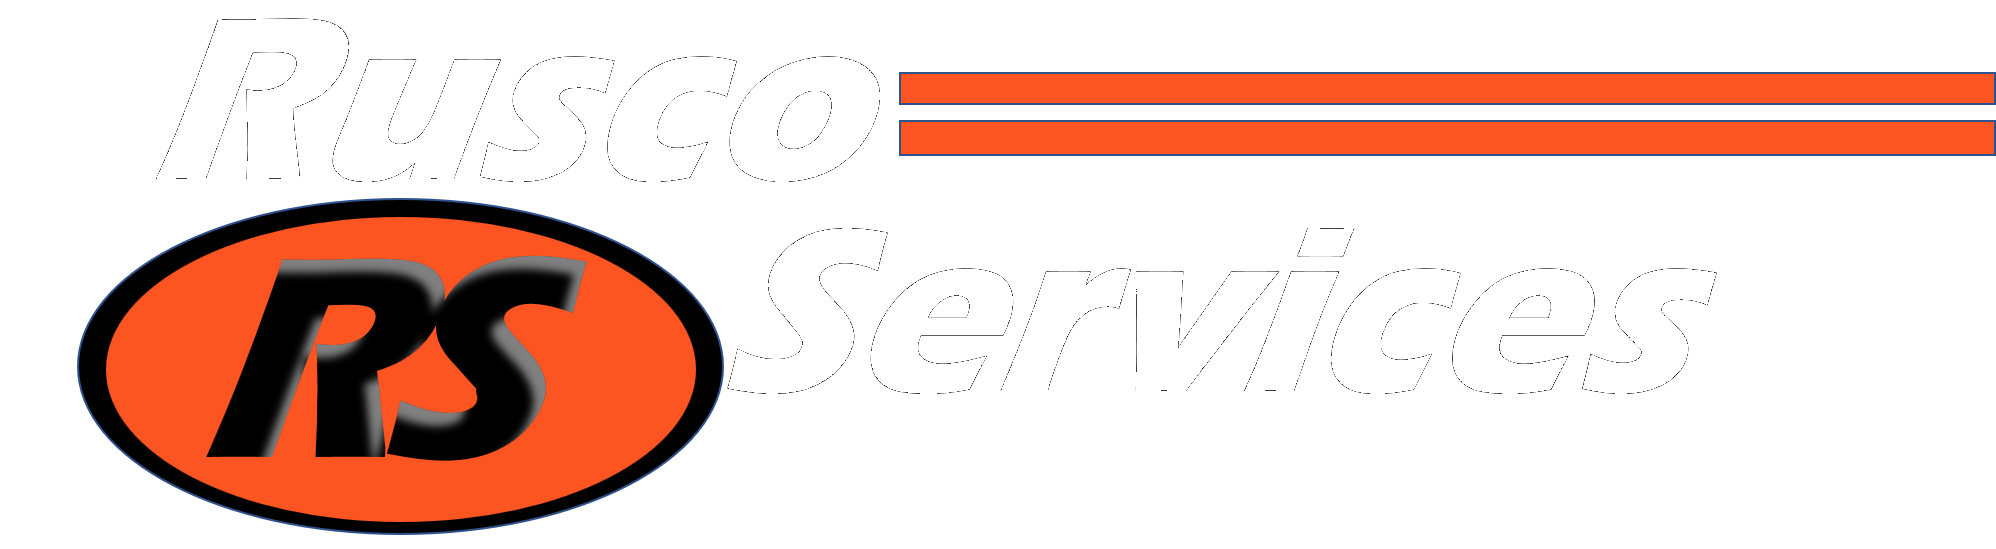 Rusco Services